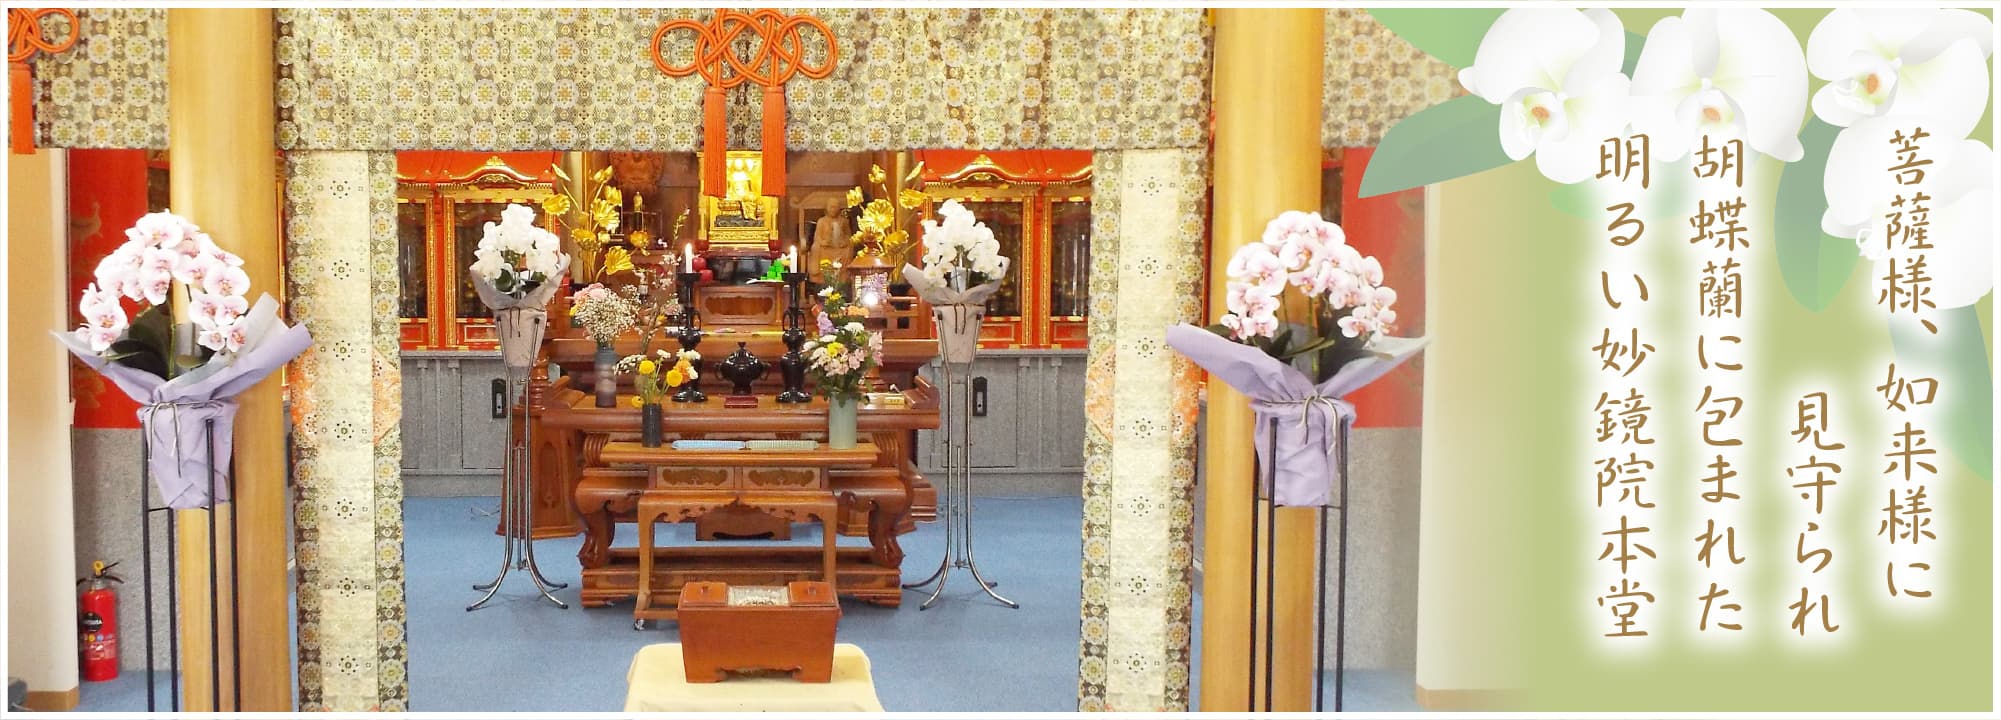 菩薩様、如来様に見守られ 胡蝶蘭に包まれた 明るい妙鏡院本堂